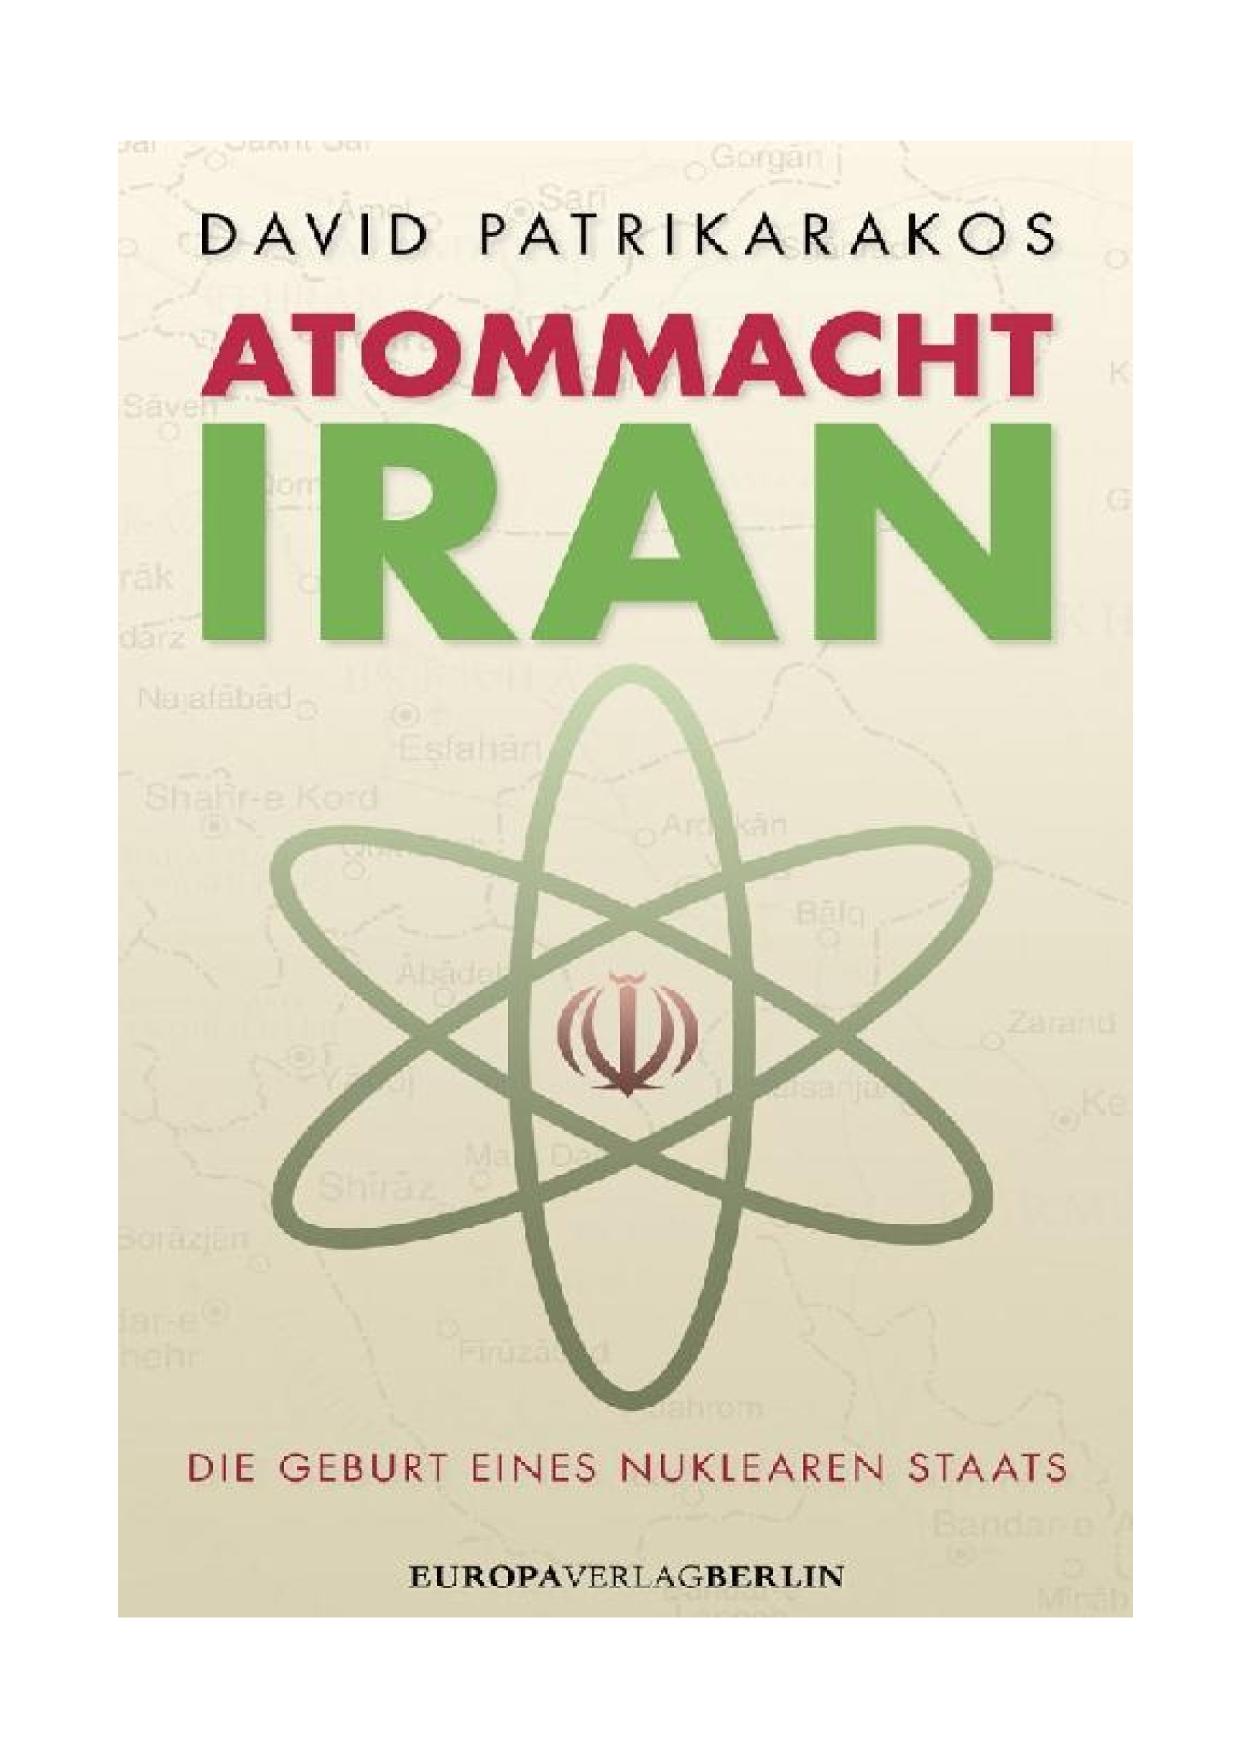 Atommacht Iran Die Geburt eines nuklaren Staats